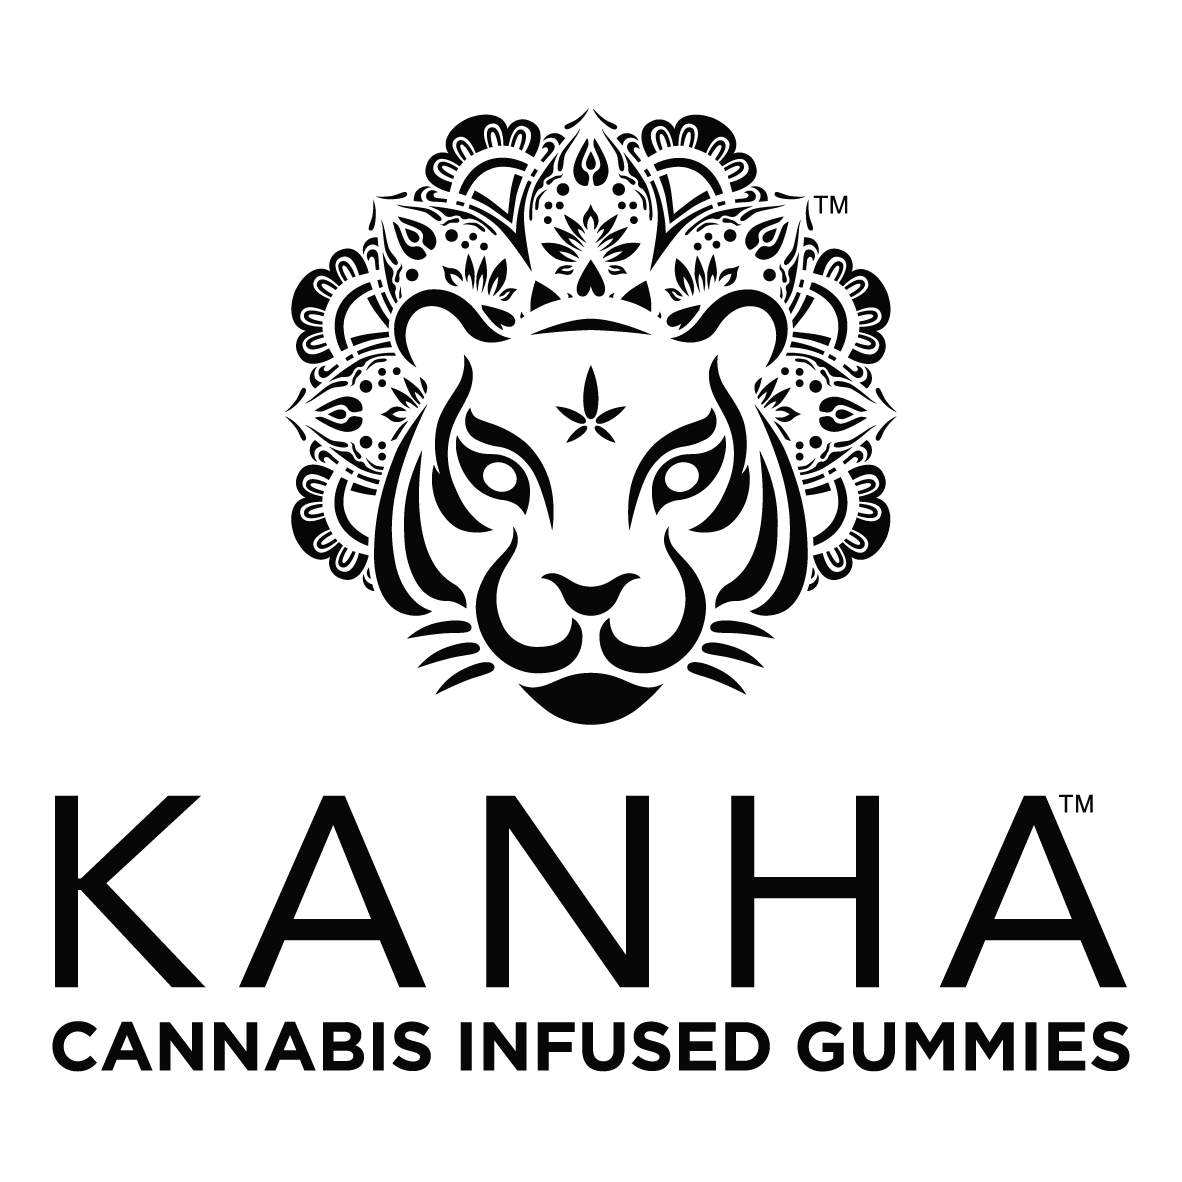 Kanha Logo